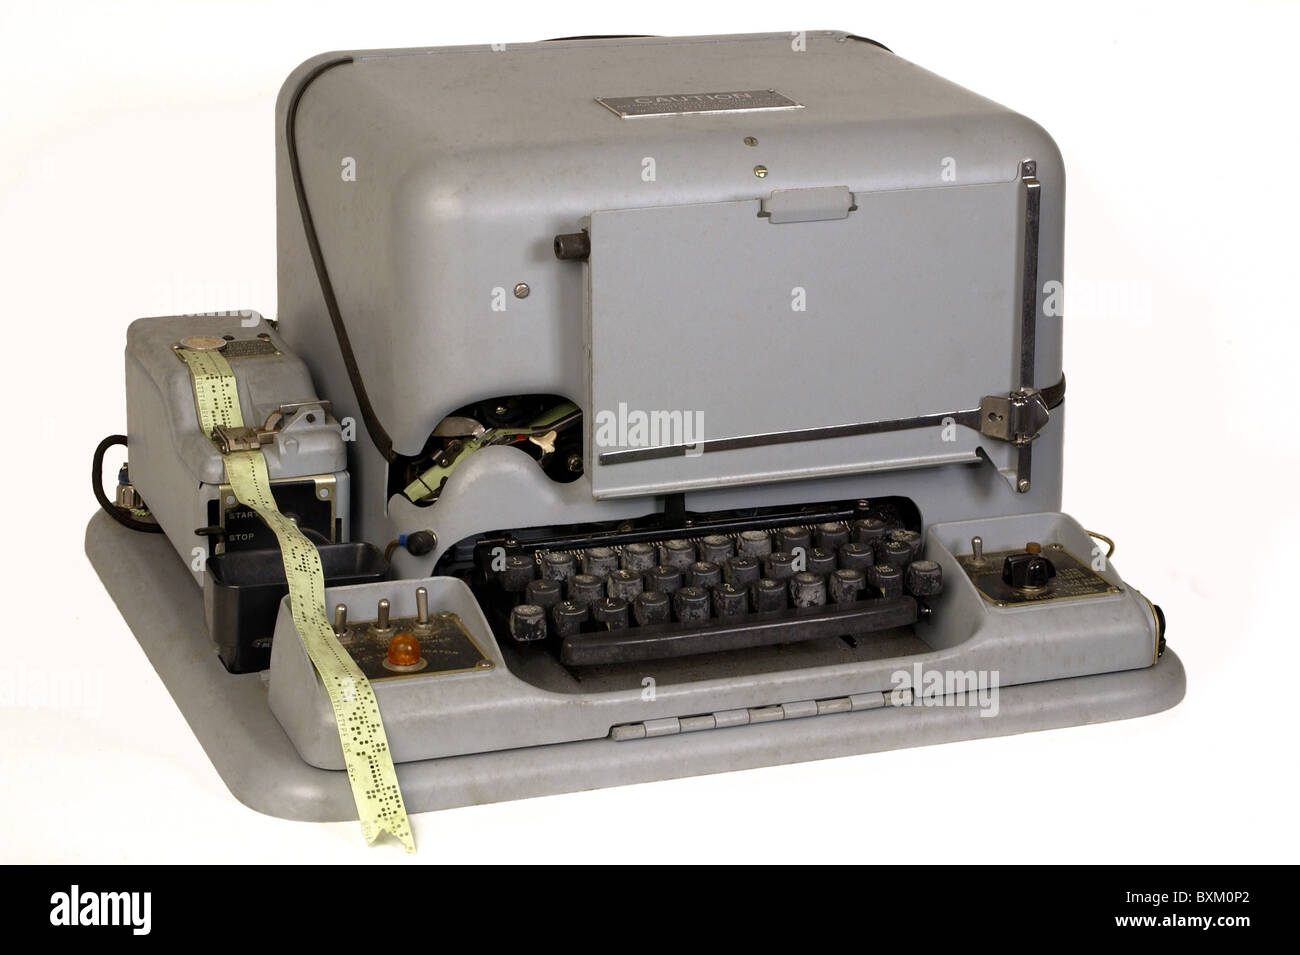 Post, Telegrafie, Teledrucker, Telex, mit Papierband, Deutschland, 1940, zusätzliche-Rechte-Clearences-nicht vorhanden Stockfoto